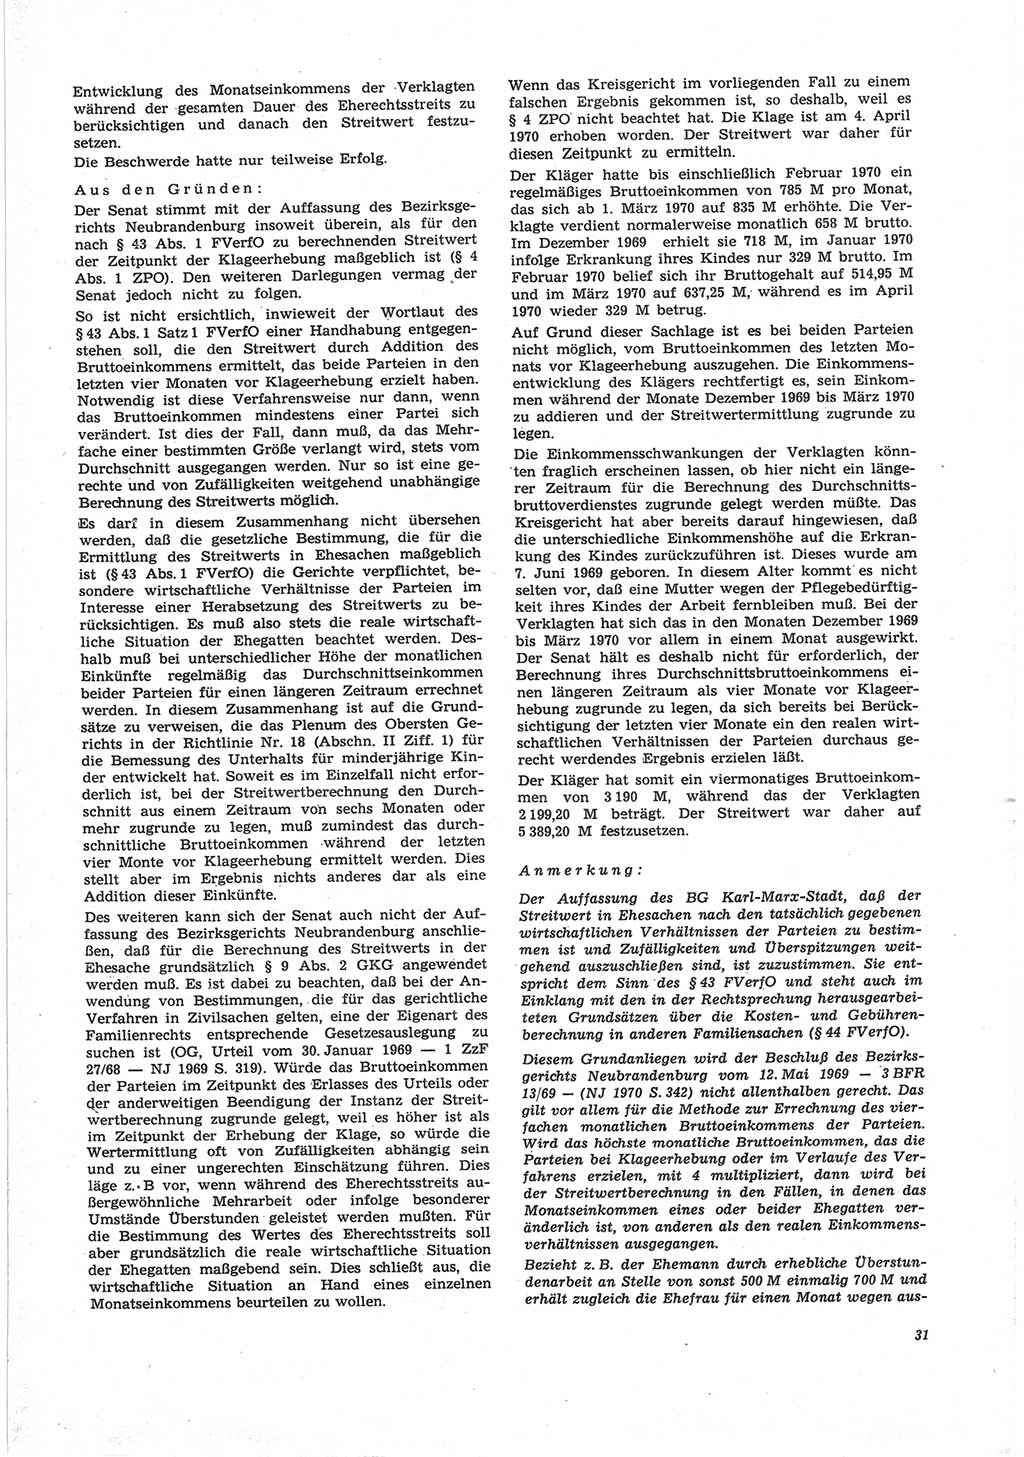 Neue Justiz (NJ), Zeitschrift für Recht und Rechtswissenschaft [Deutsche Demokratische Republik (DDR)], 25. Jahrgang 1971, Seite 31 (NJ DDR 1971, S. 31)